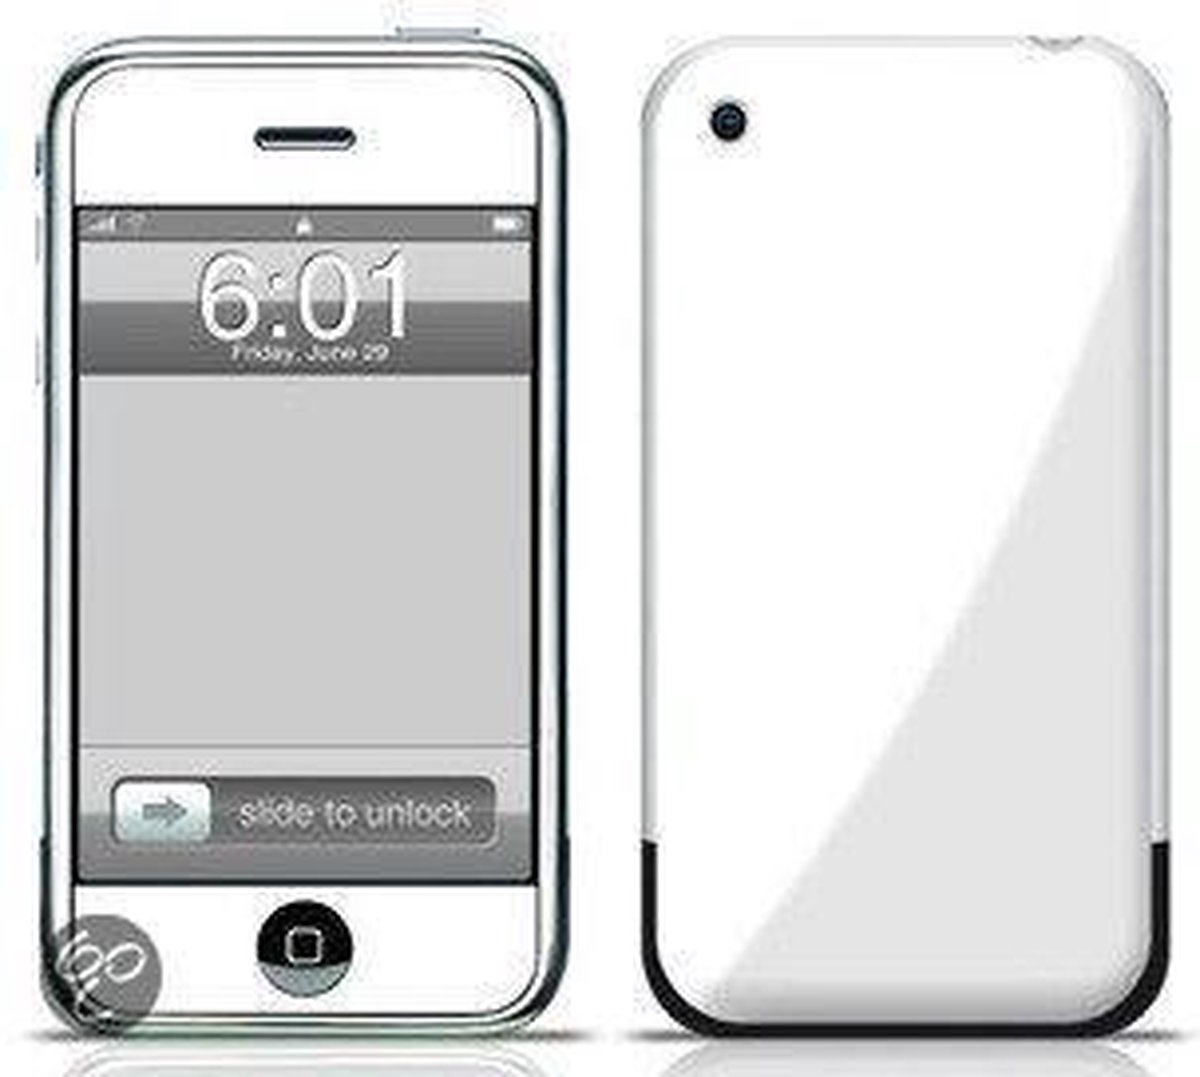 Waakzaamheid Misleidend Net zo Apple iPhone 3GS - 16GB - Wit | bol.com